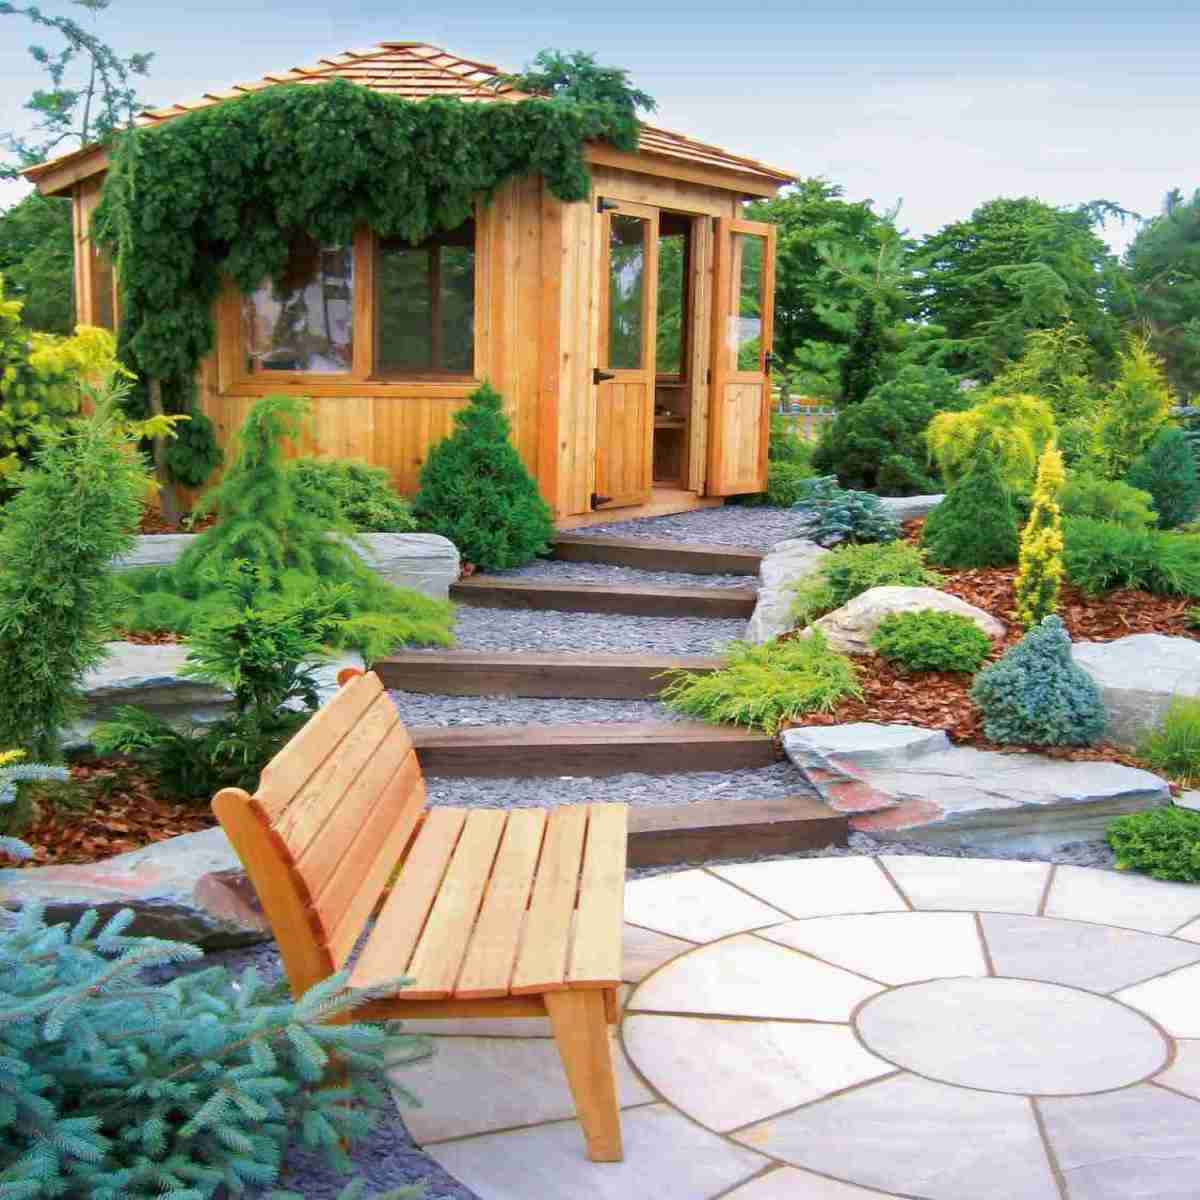 Garten Mit Remmers Pflegeprodukten Holz im Garten auf die kalte Jahreszeit vorbereiten - News, Bild 1